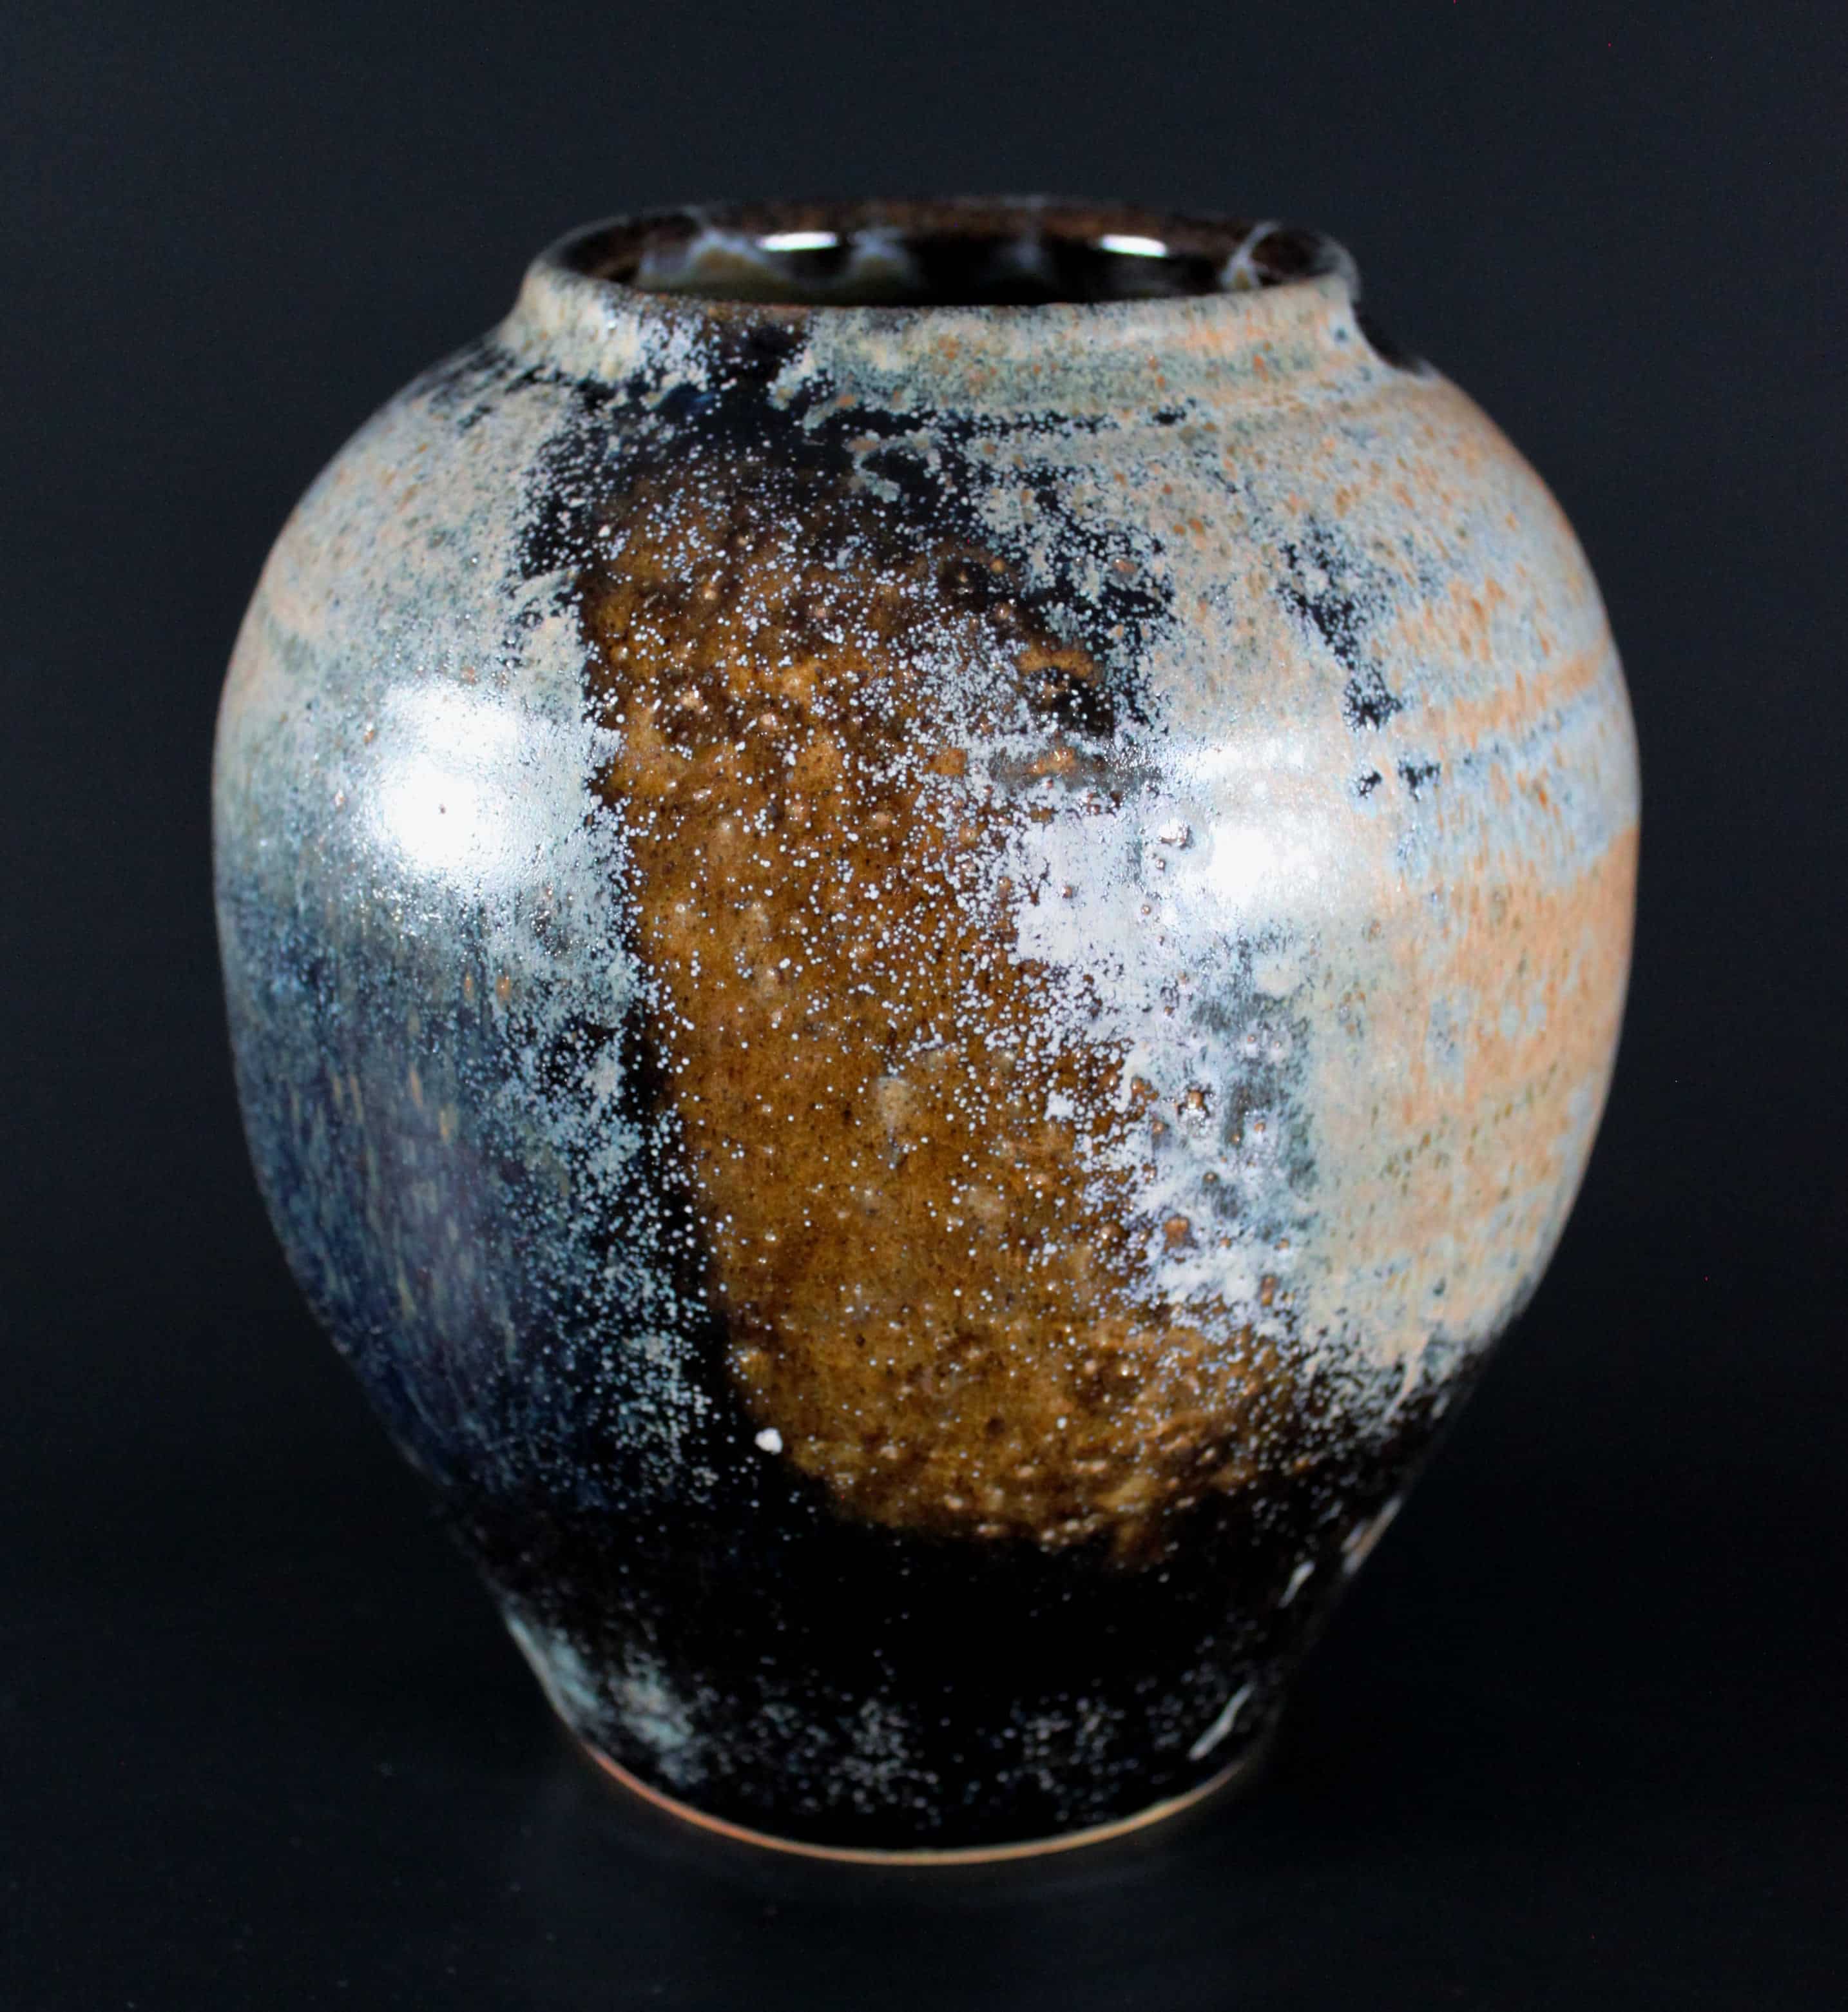 Fotografi av keramikvas med spräcklig glasyr i blått och brunt.